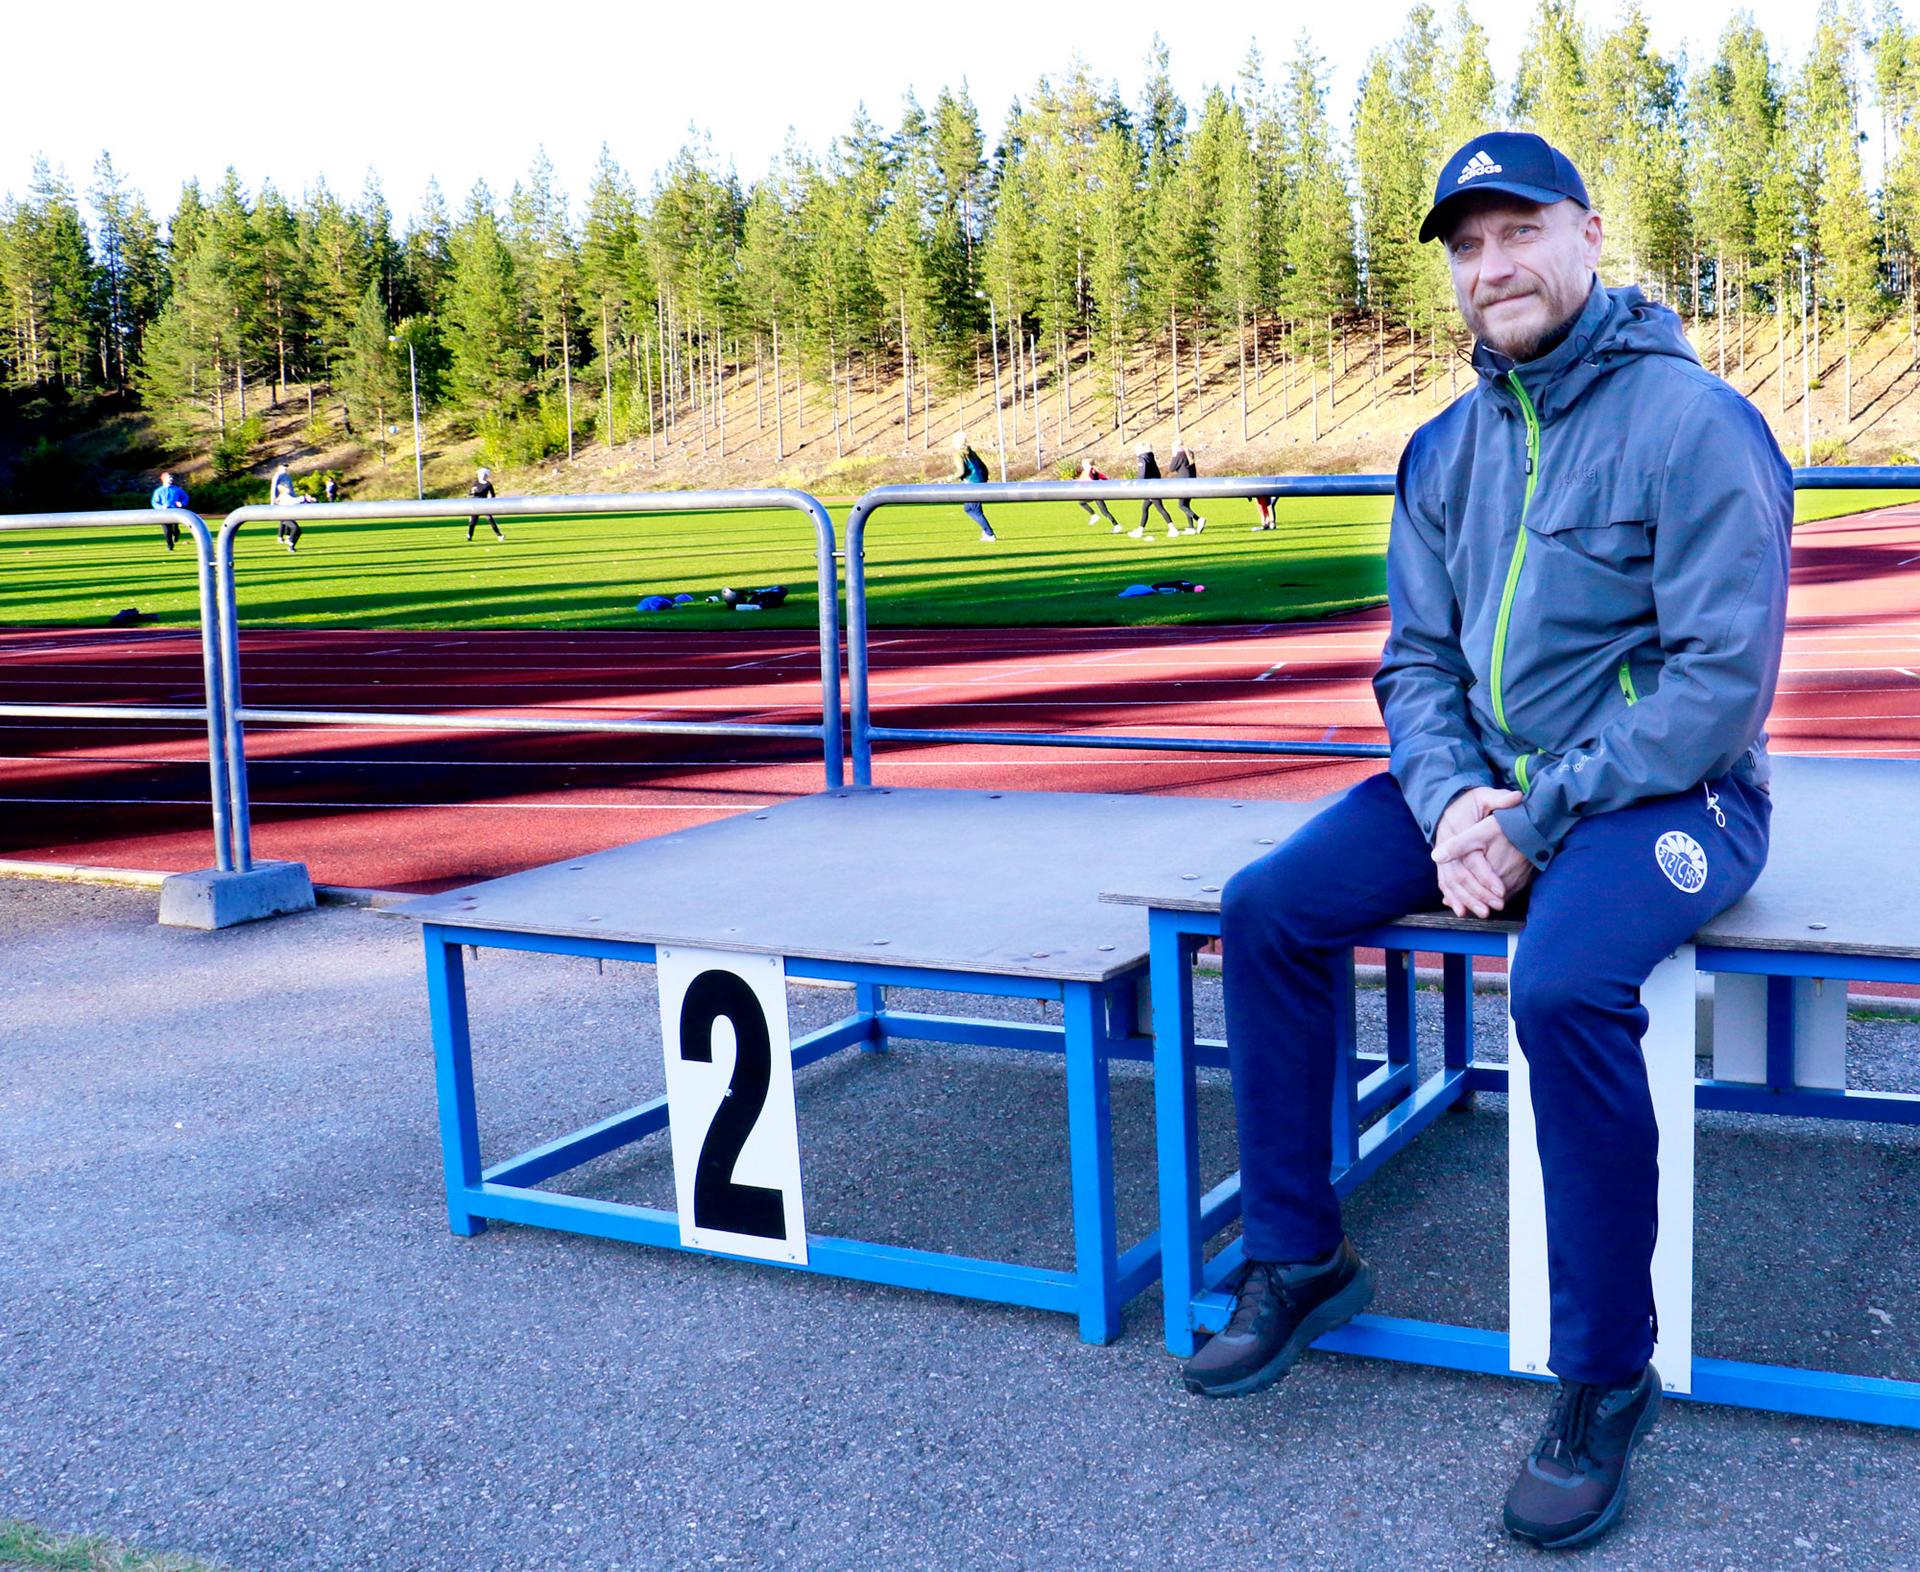 Arto Raiskio toi tyttärensä yleisurheiluharjoituksiin Kyötikkälän kentälle sunnuntaina illansuussa.